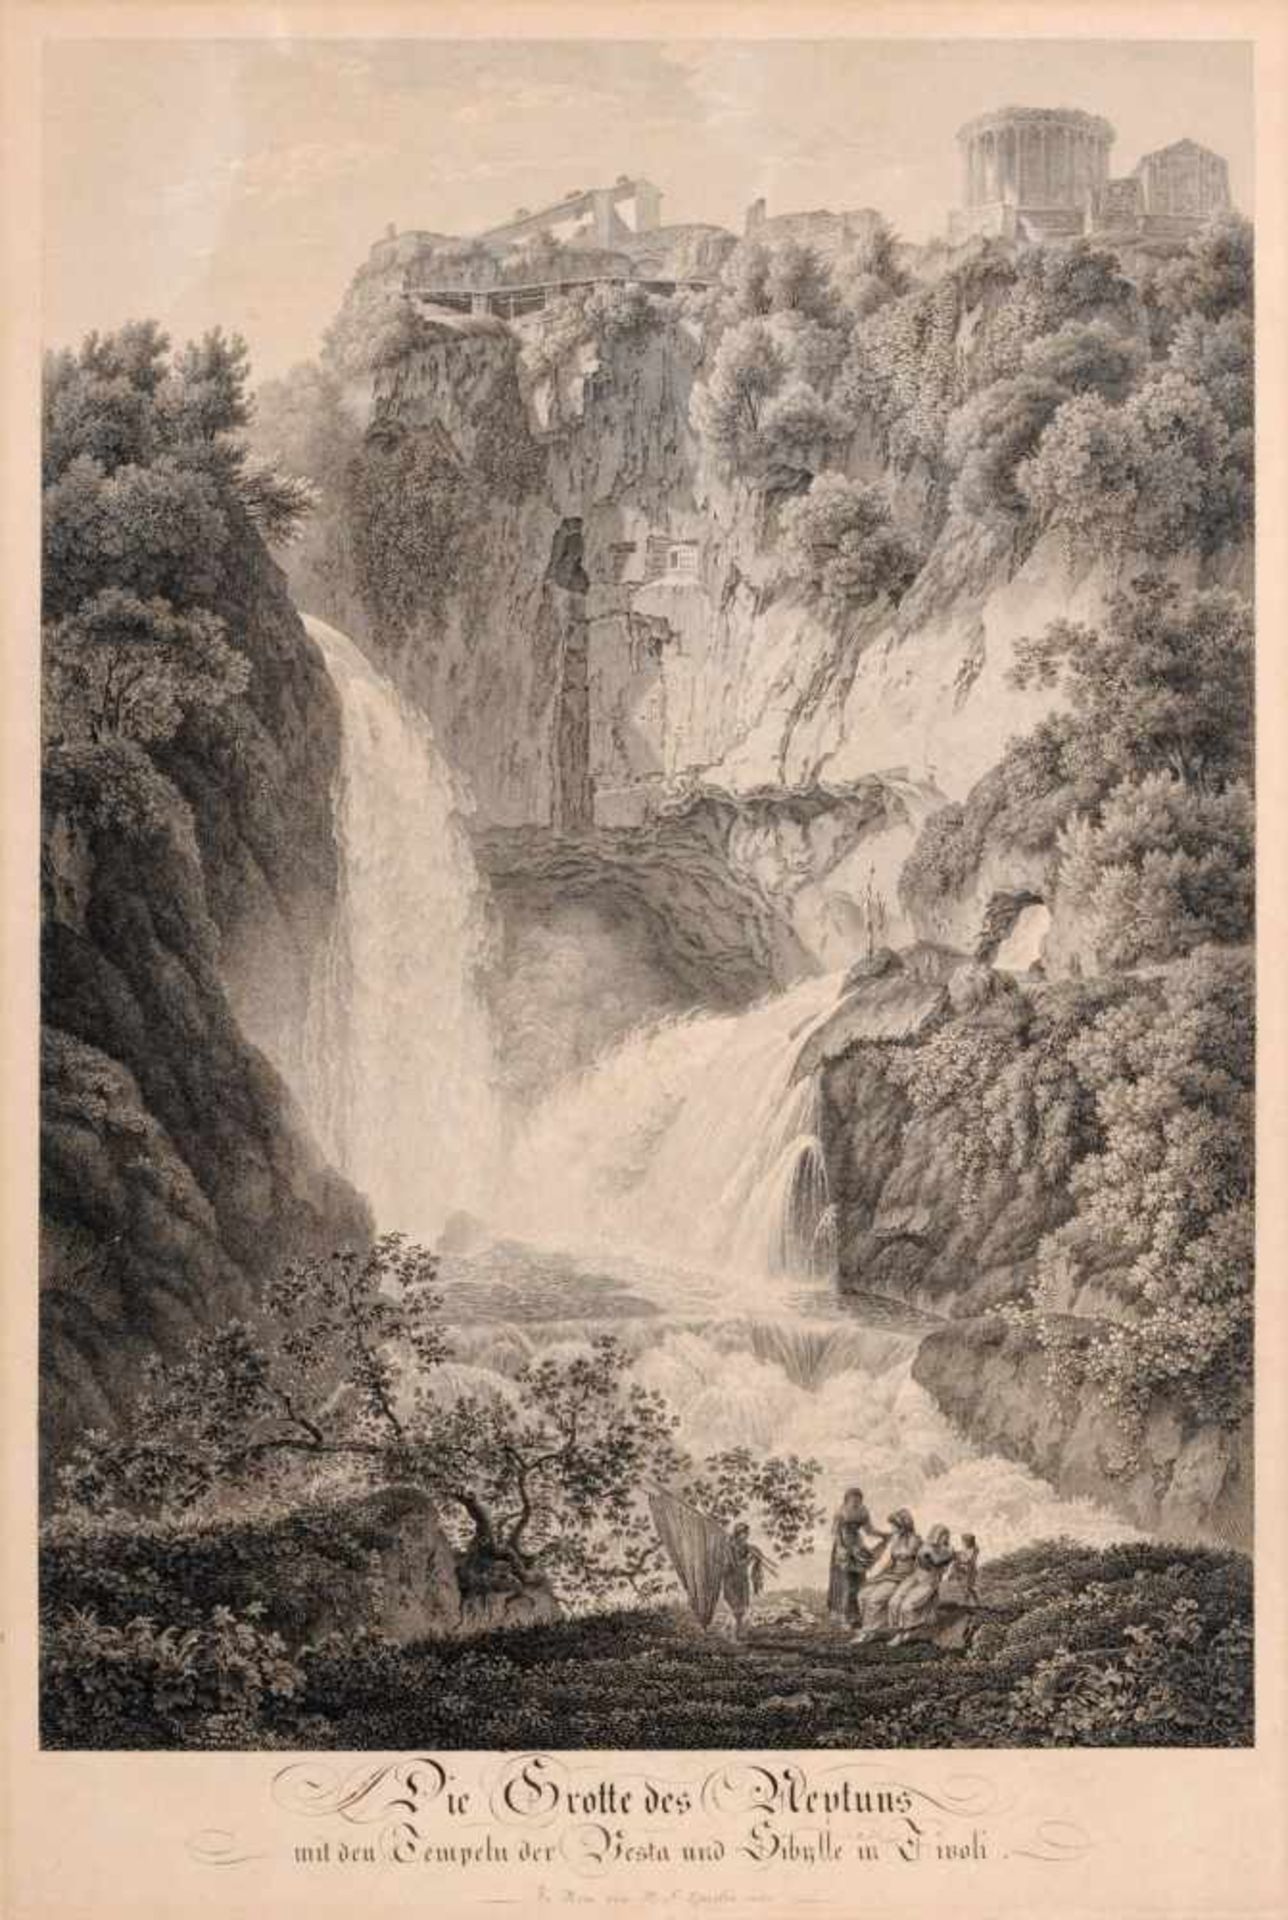 Friedrich Wilhelm Gmelin "Die Grotte des Neptuns mit den Tempeln der Vesta und Sibylle in Tivoli".